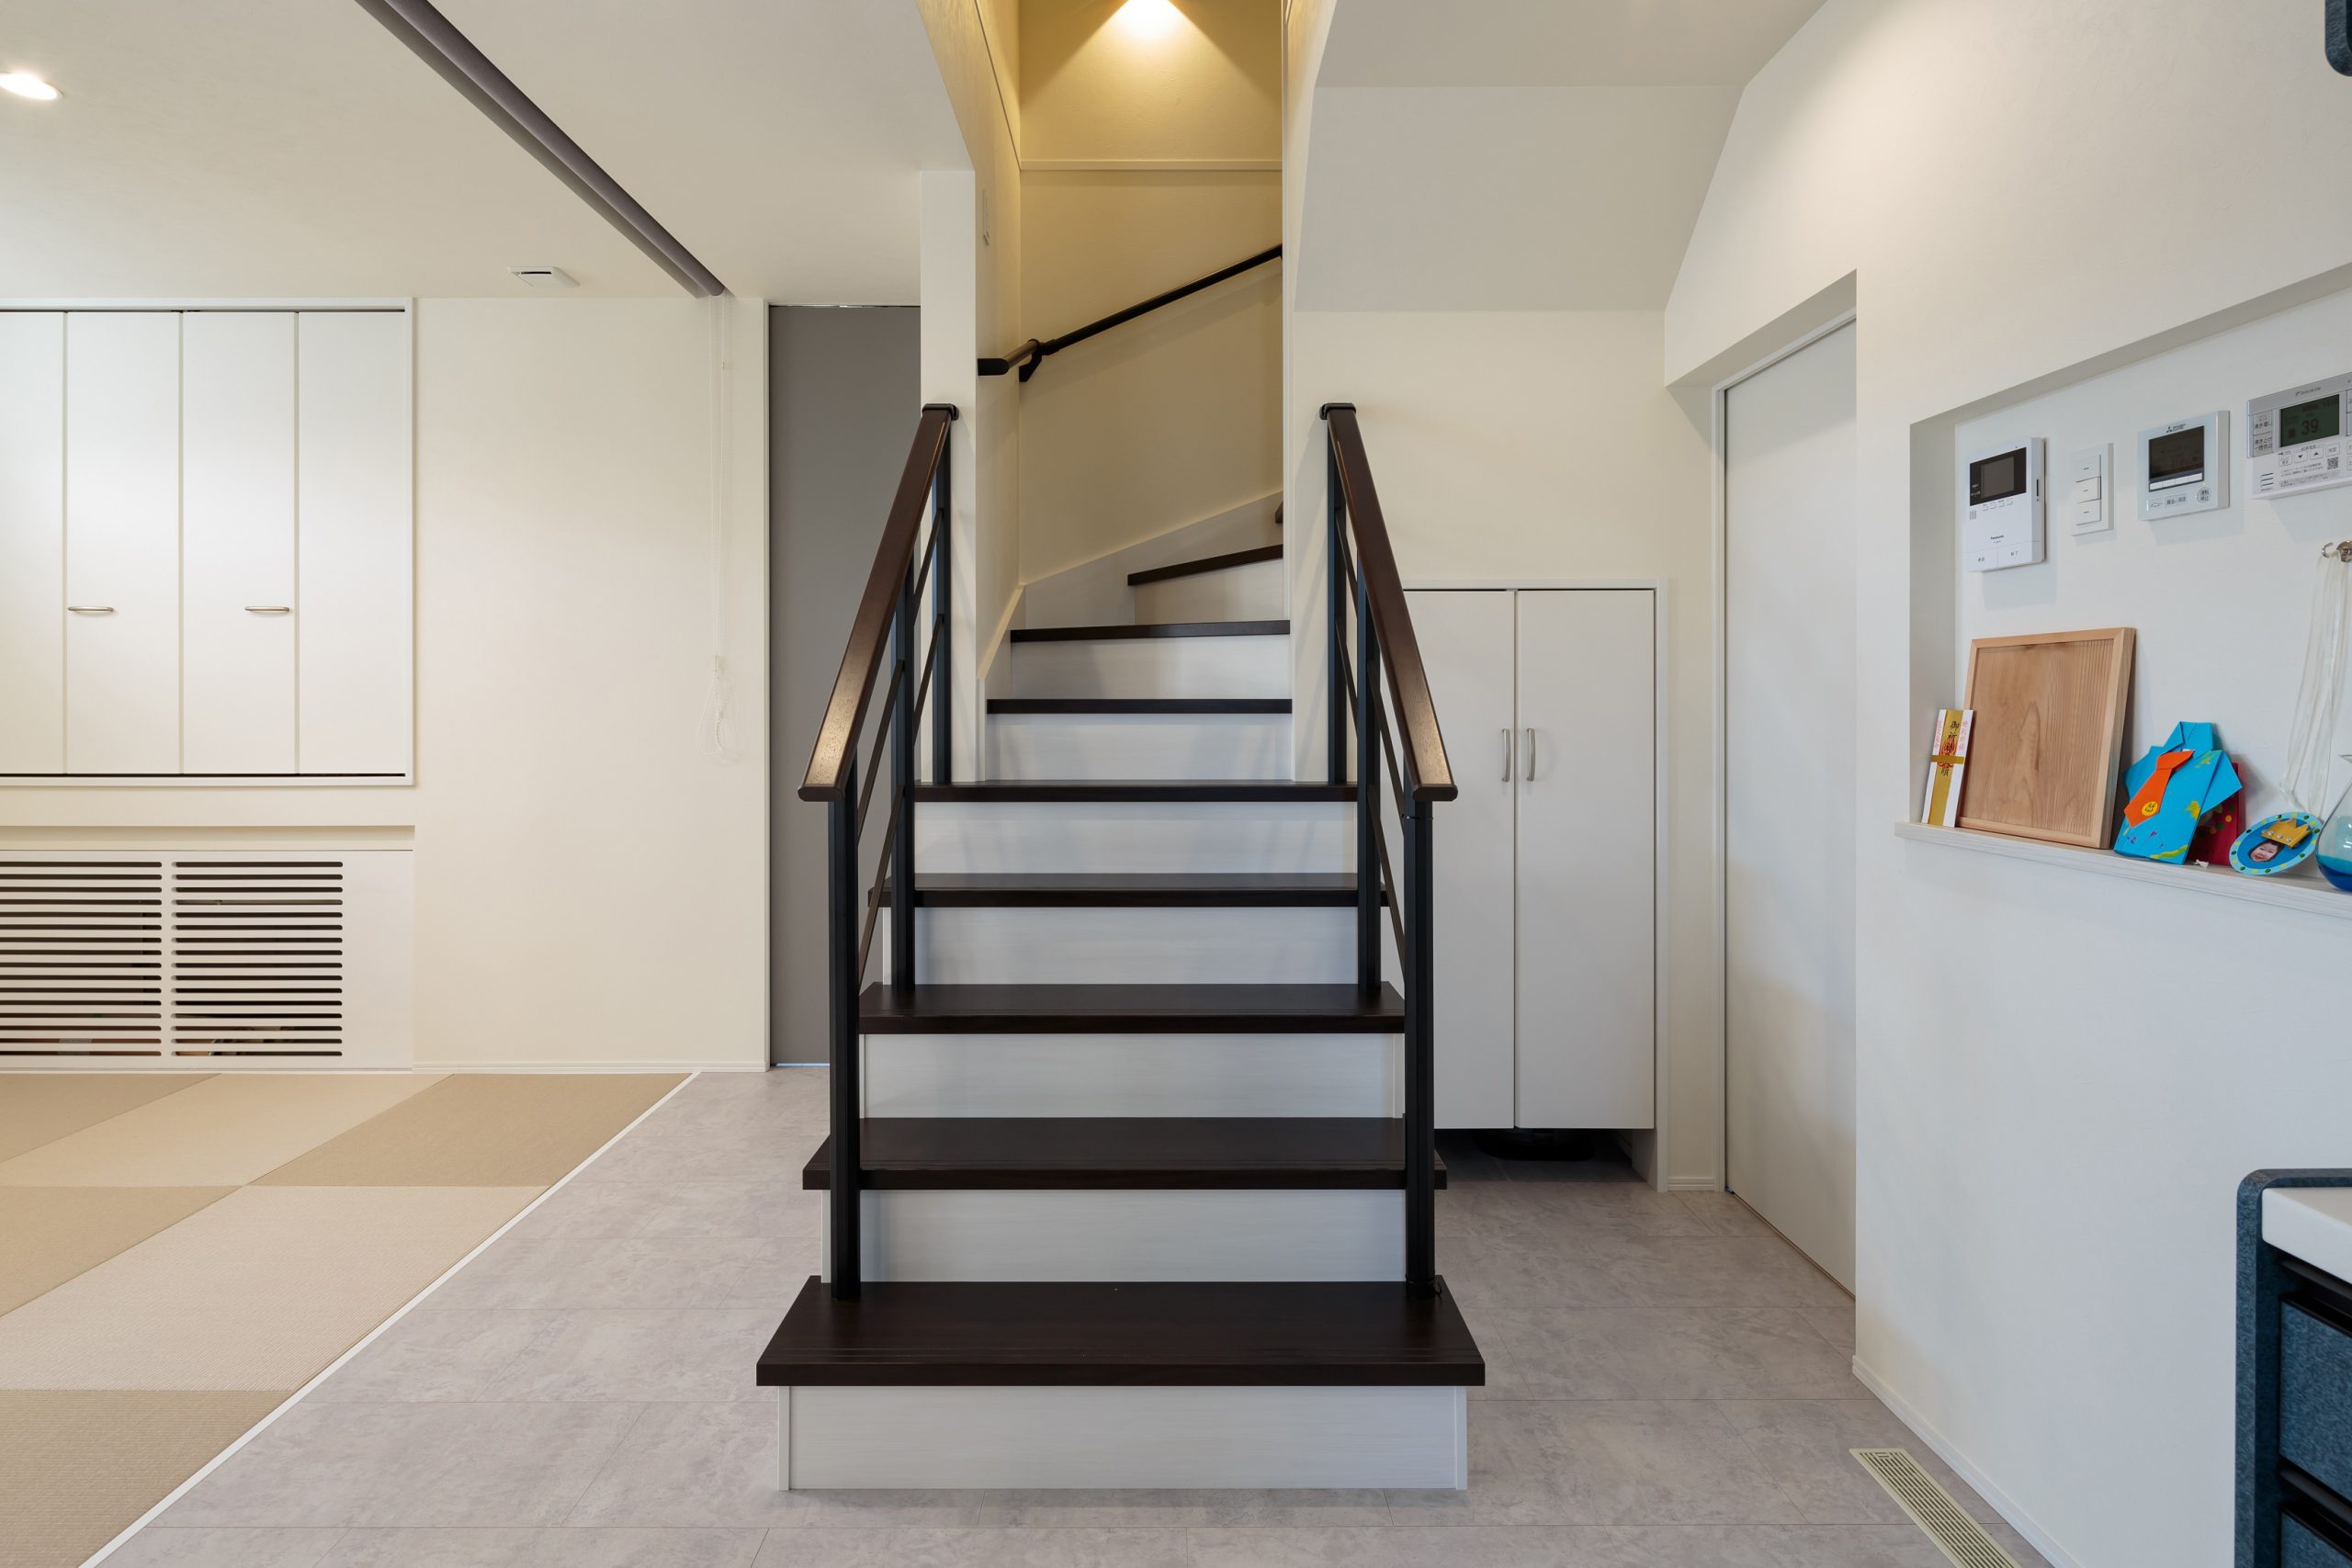 リビング階段を見せるデザインにして空間を緩やかにゾーニング。階段下は収納にしてデッドスペースを有効活用